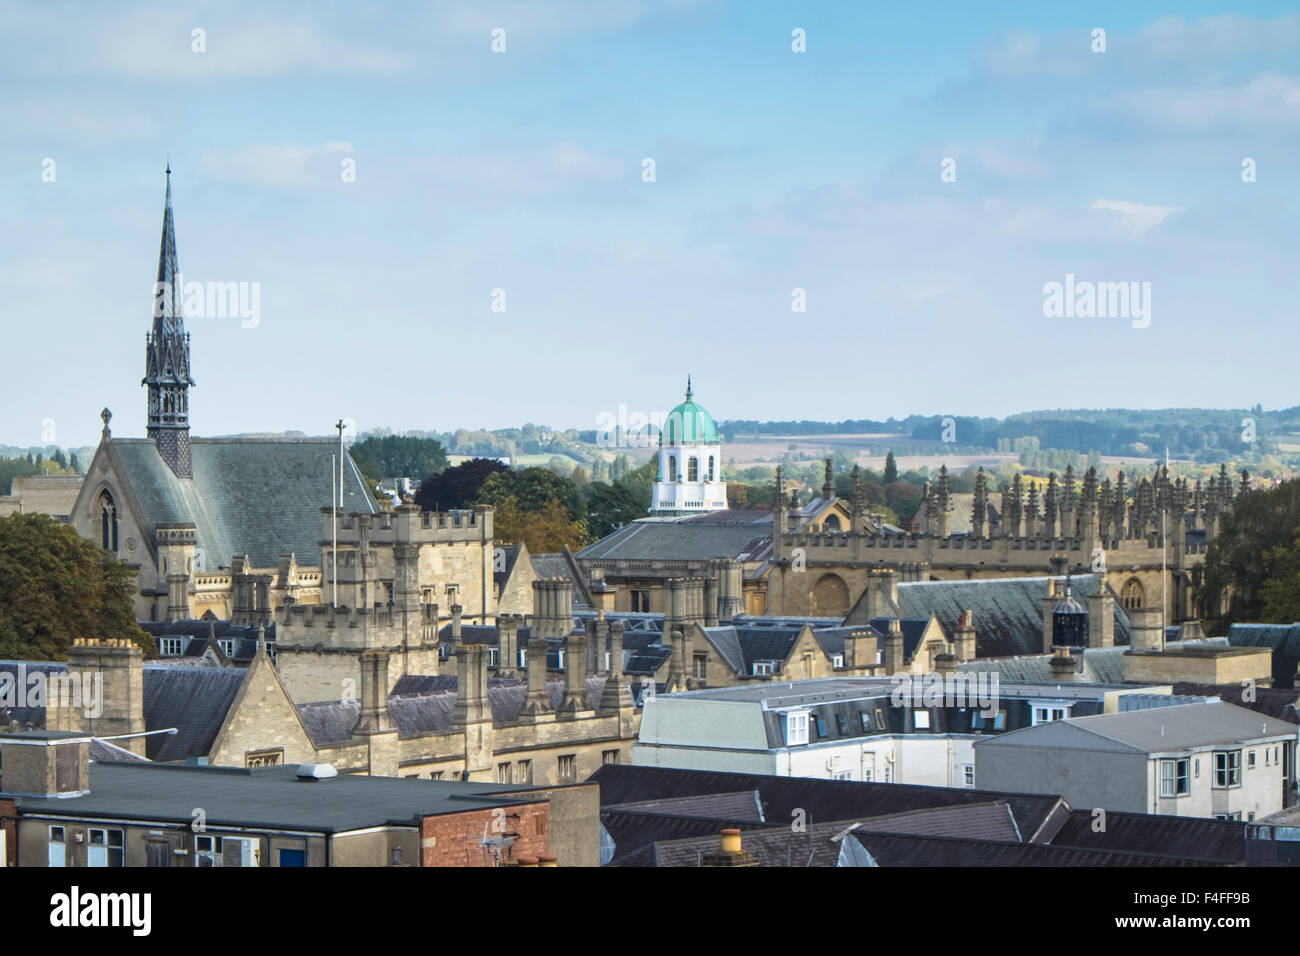 Una visita a la histórica ciudad universitaria de Oxford, Oxfordshire, Inglaterra vista desde la torre Carfax Foto de stock